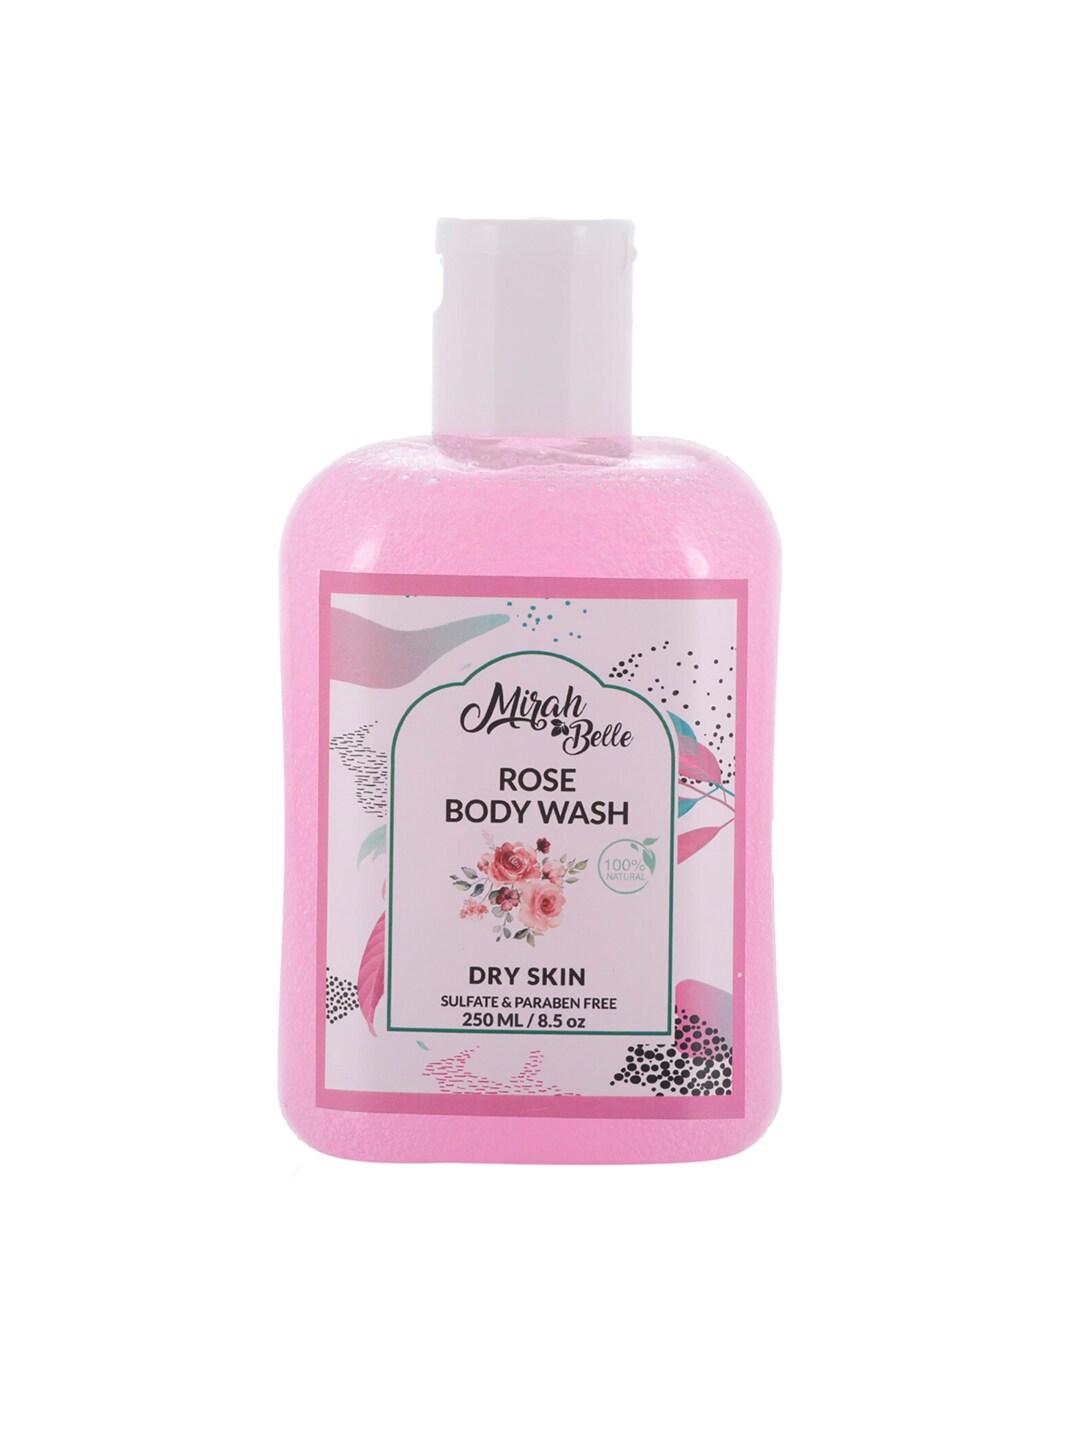 Mirah Belle Rose Dry Skin Body Wash 250 ml